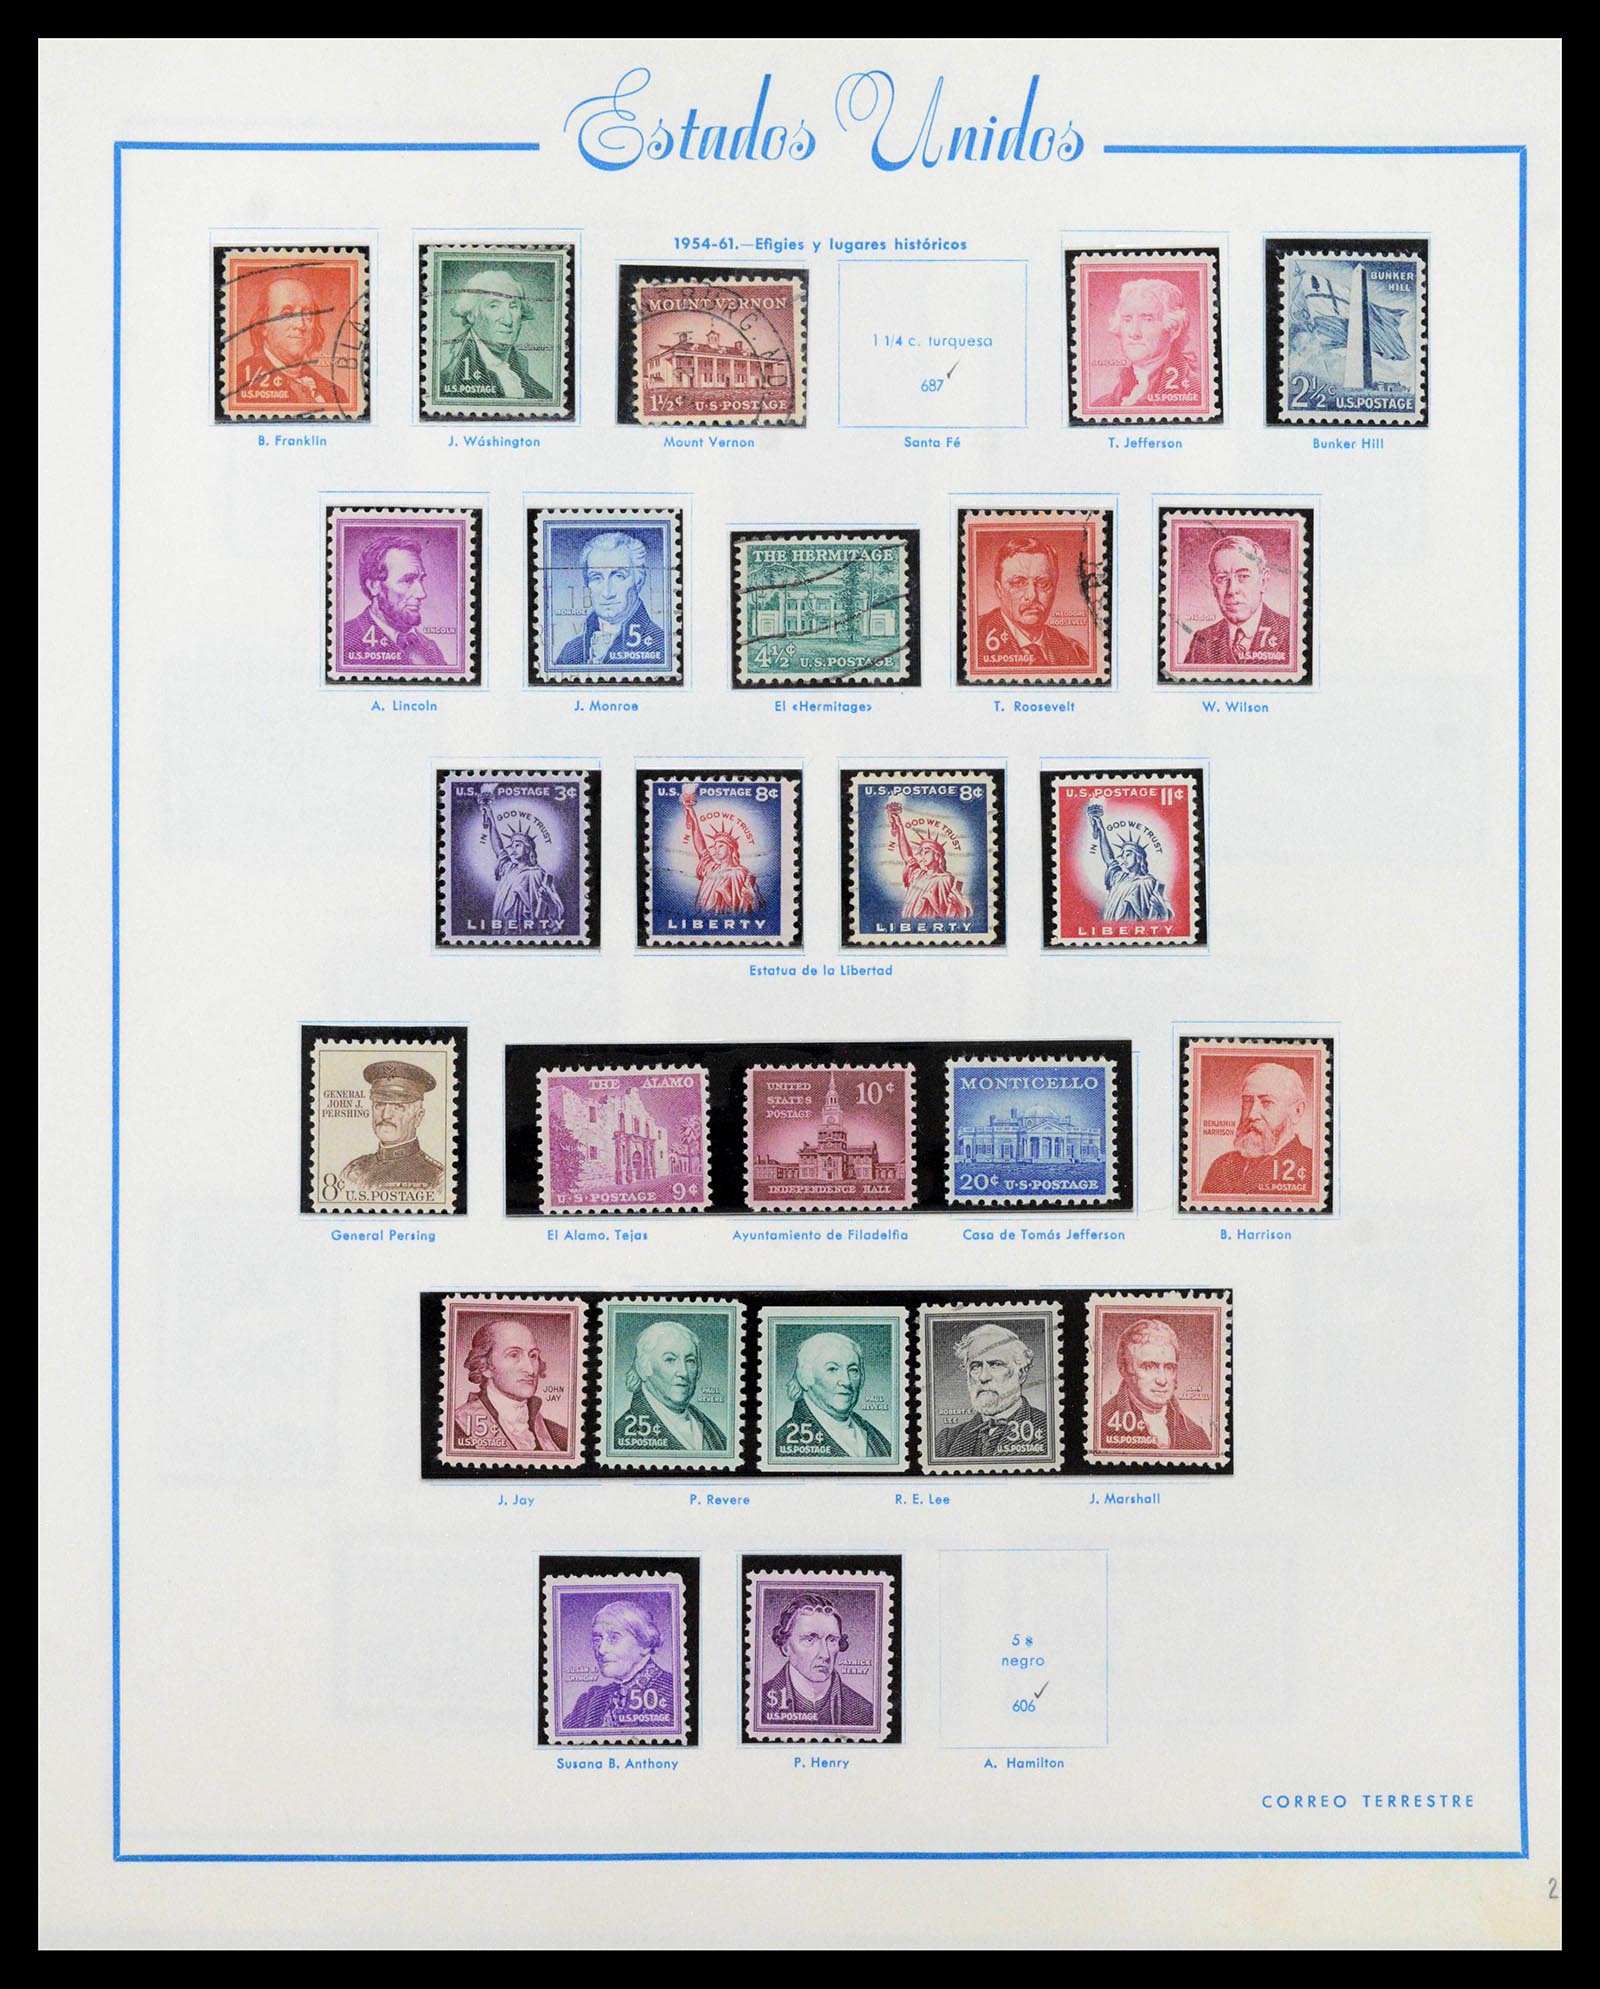 39190 0032 - Stamp collection 39190 USA 1851-1975.